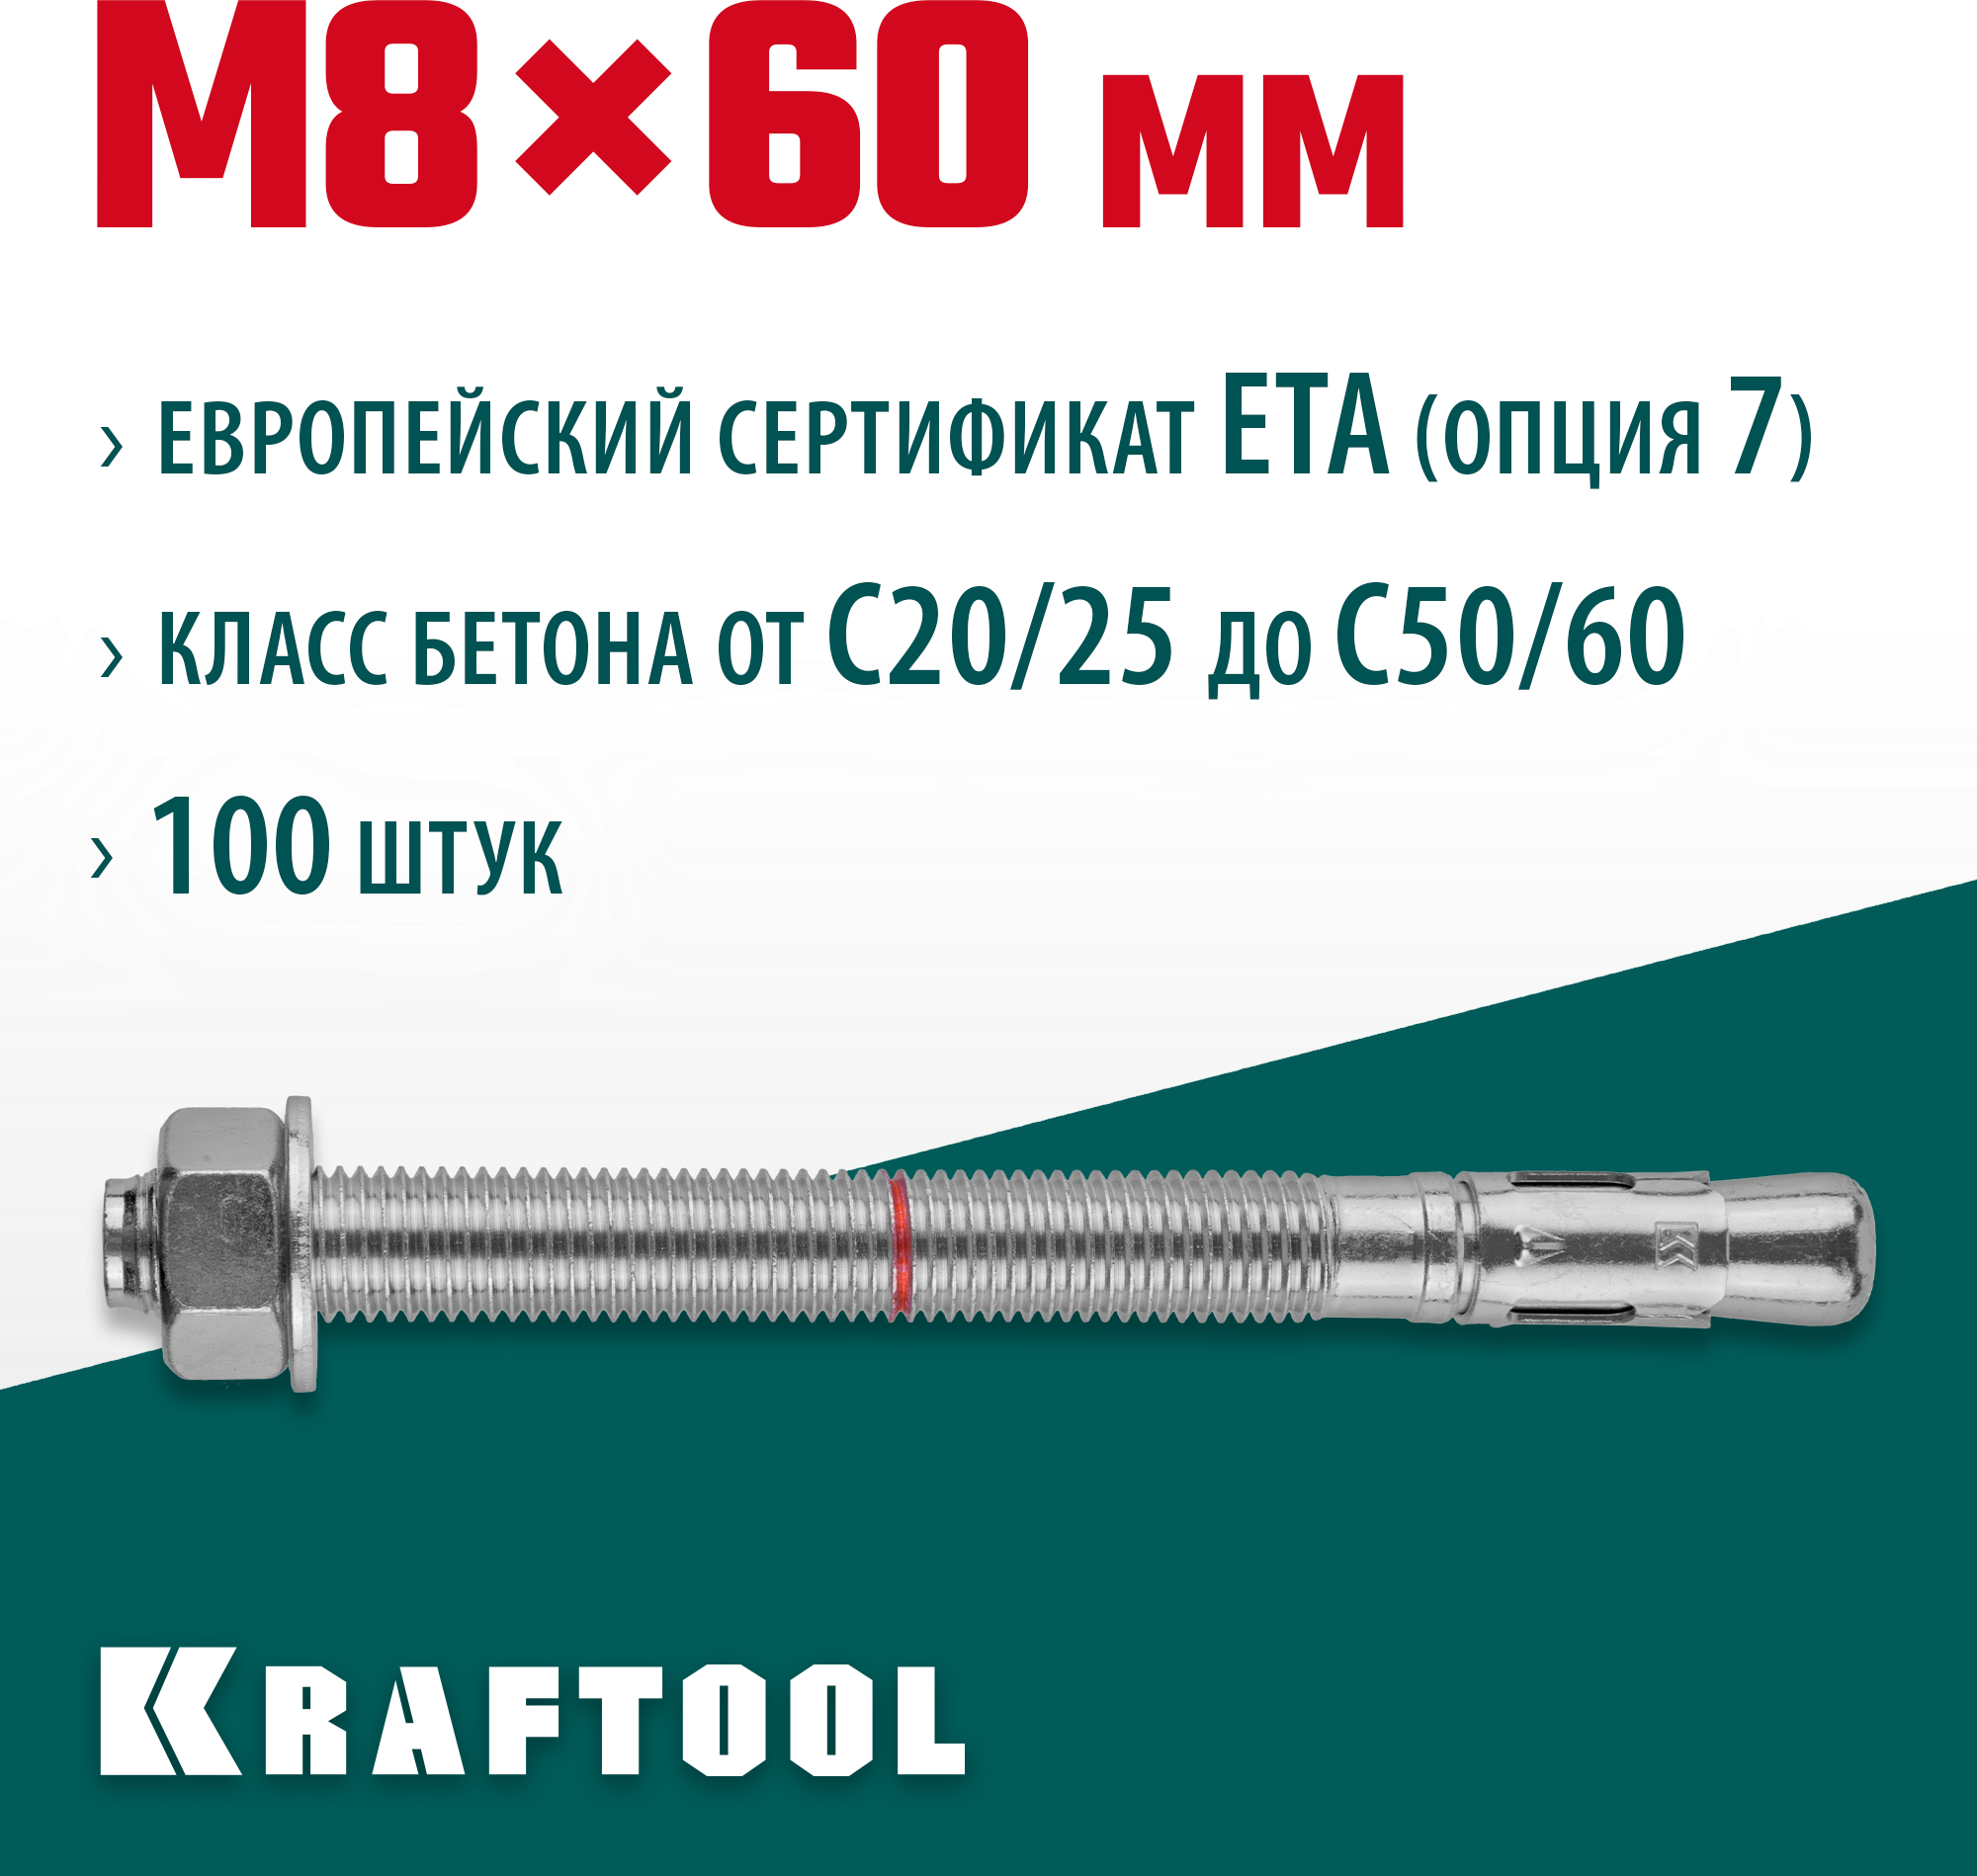 KRAFTOOL М8x60, ETA Опция 7, 100 шт, анкер клиновой 302184-08-060